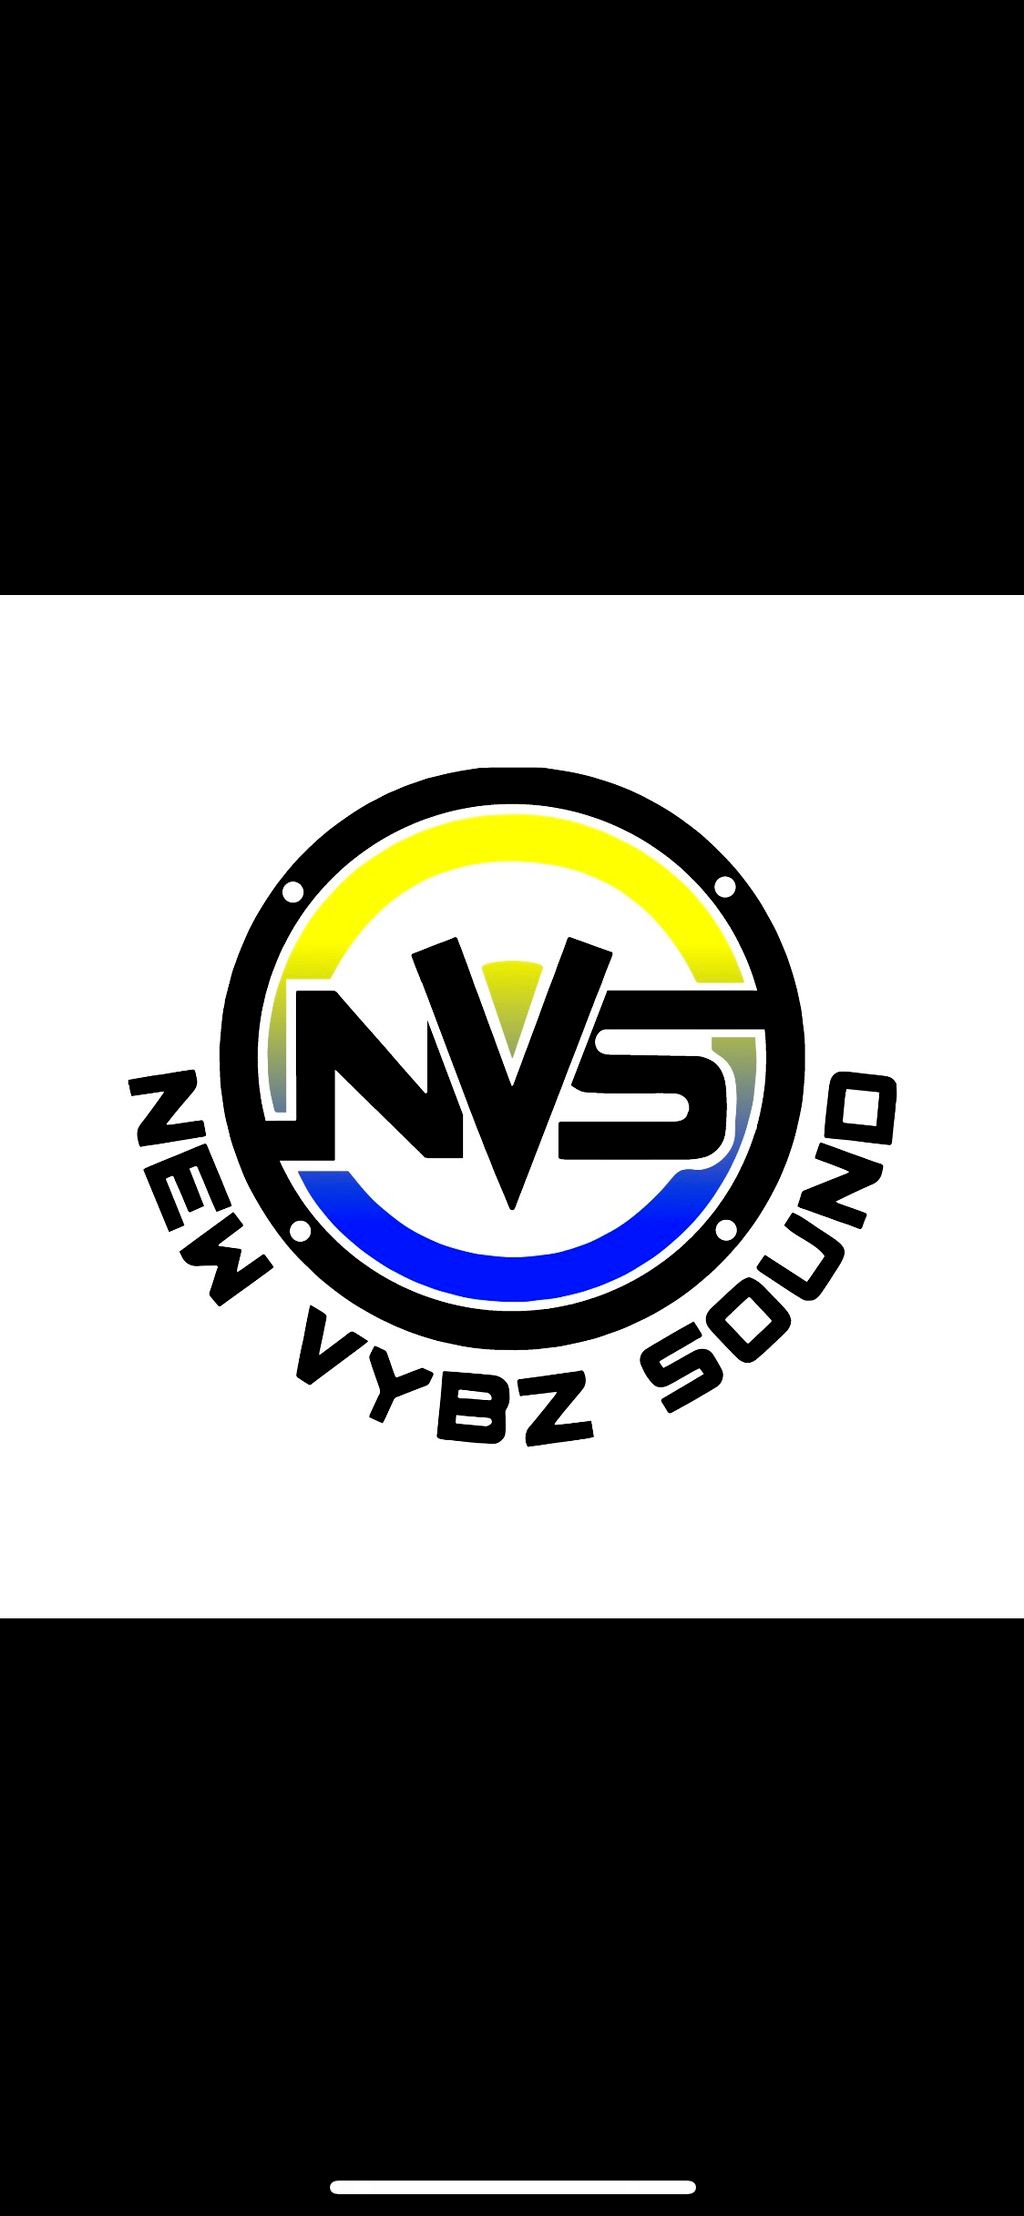 New Vybz Sound